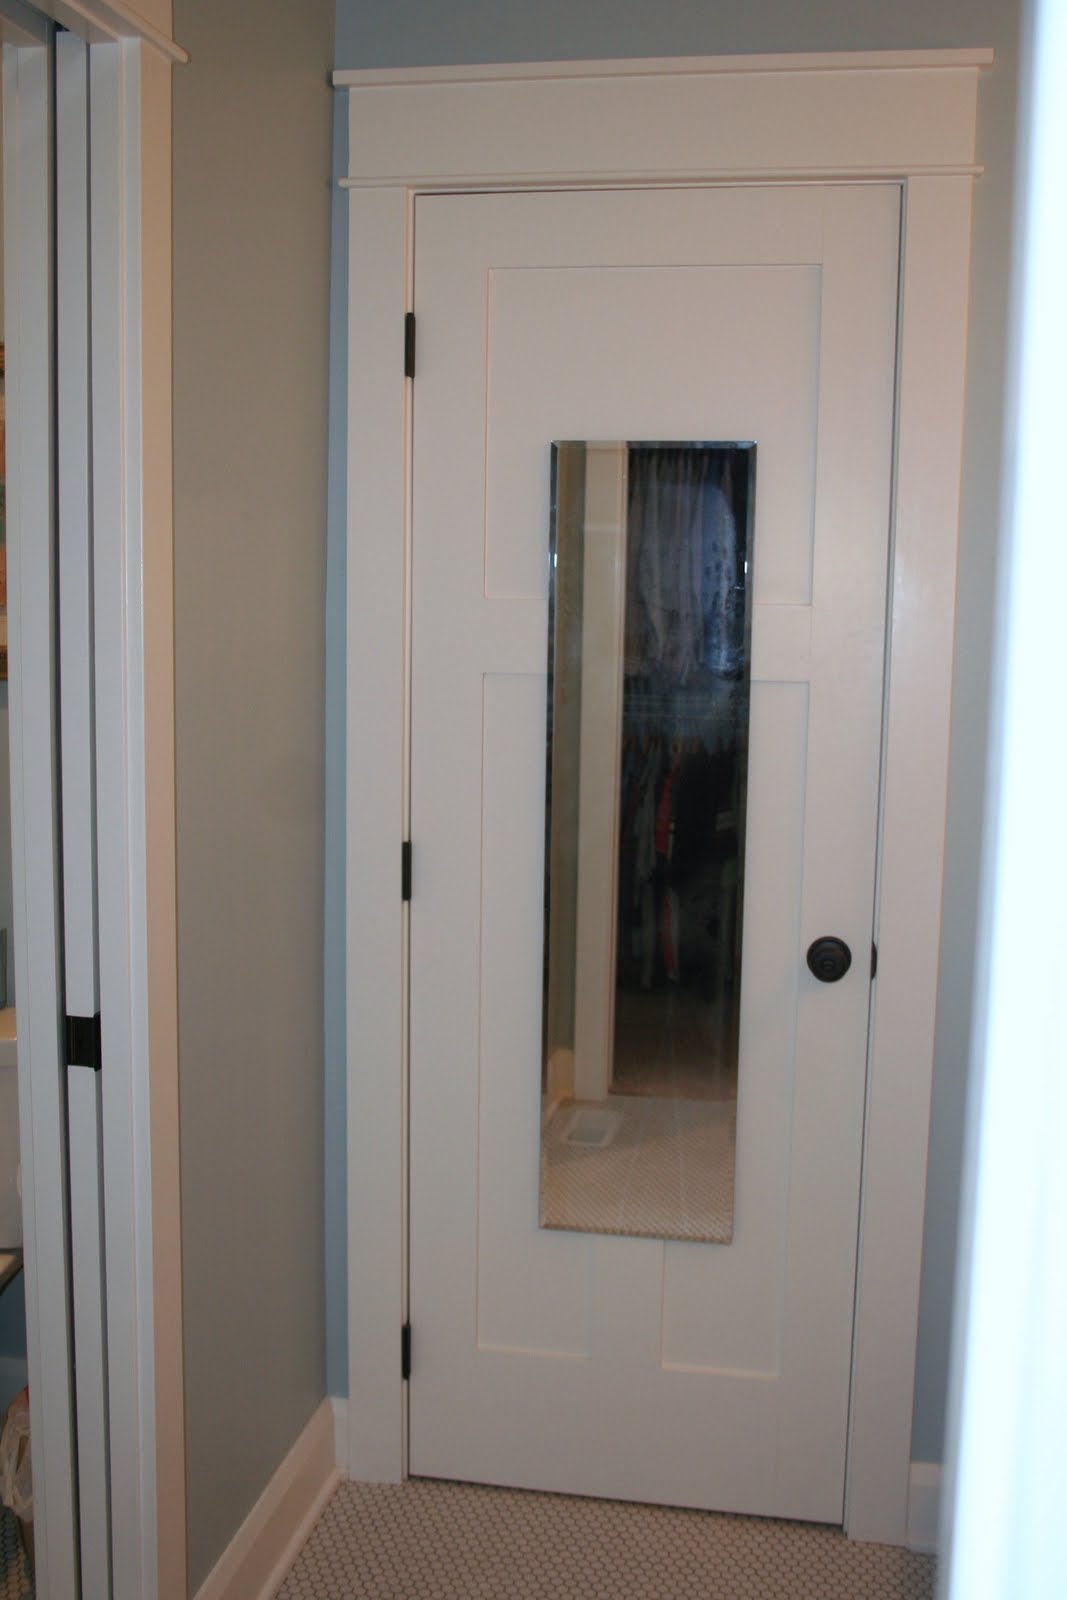 How do you hang a bathroom mirror?